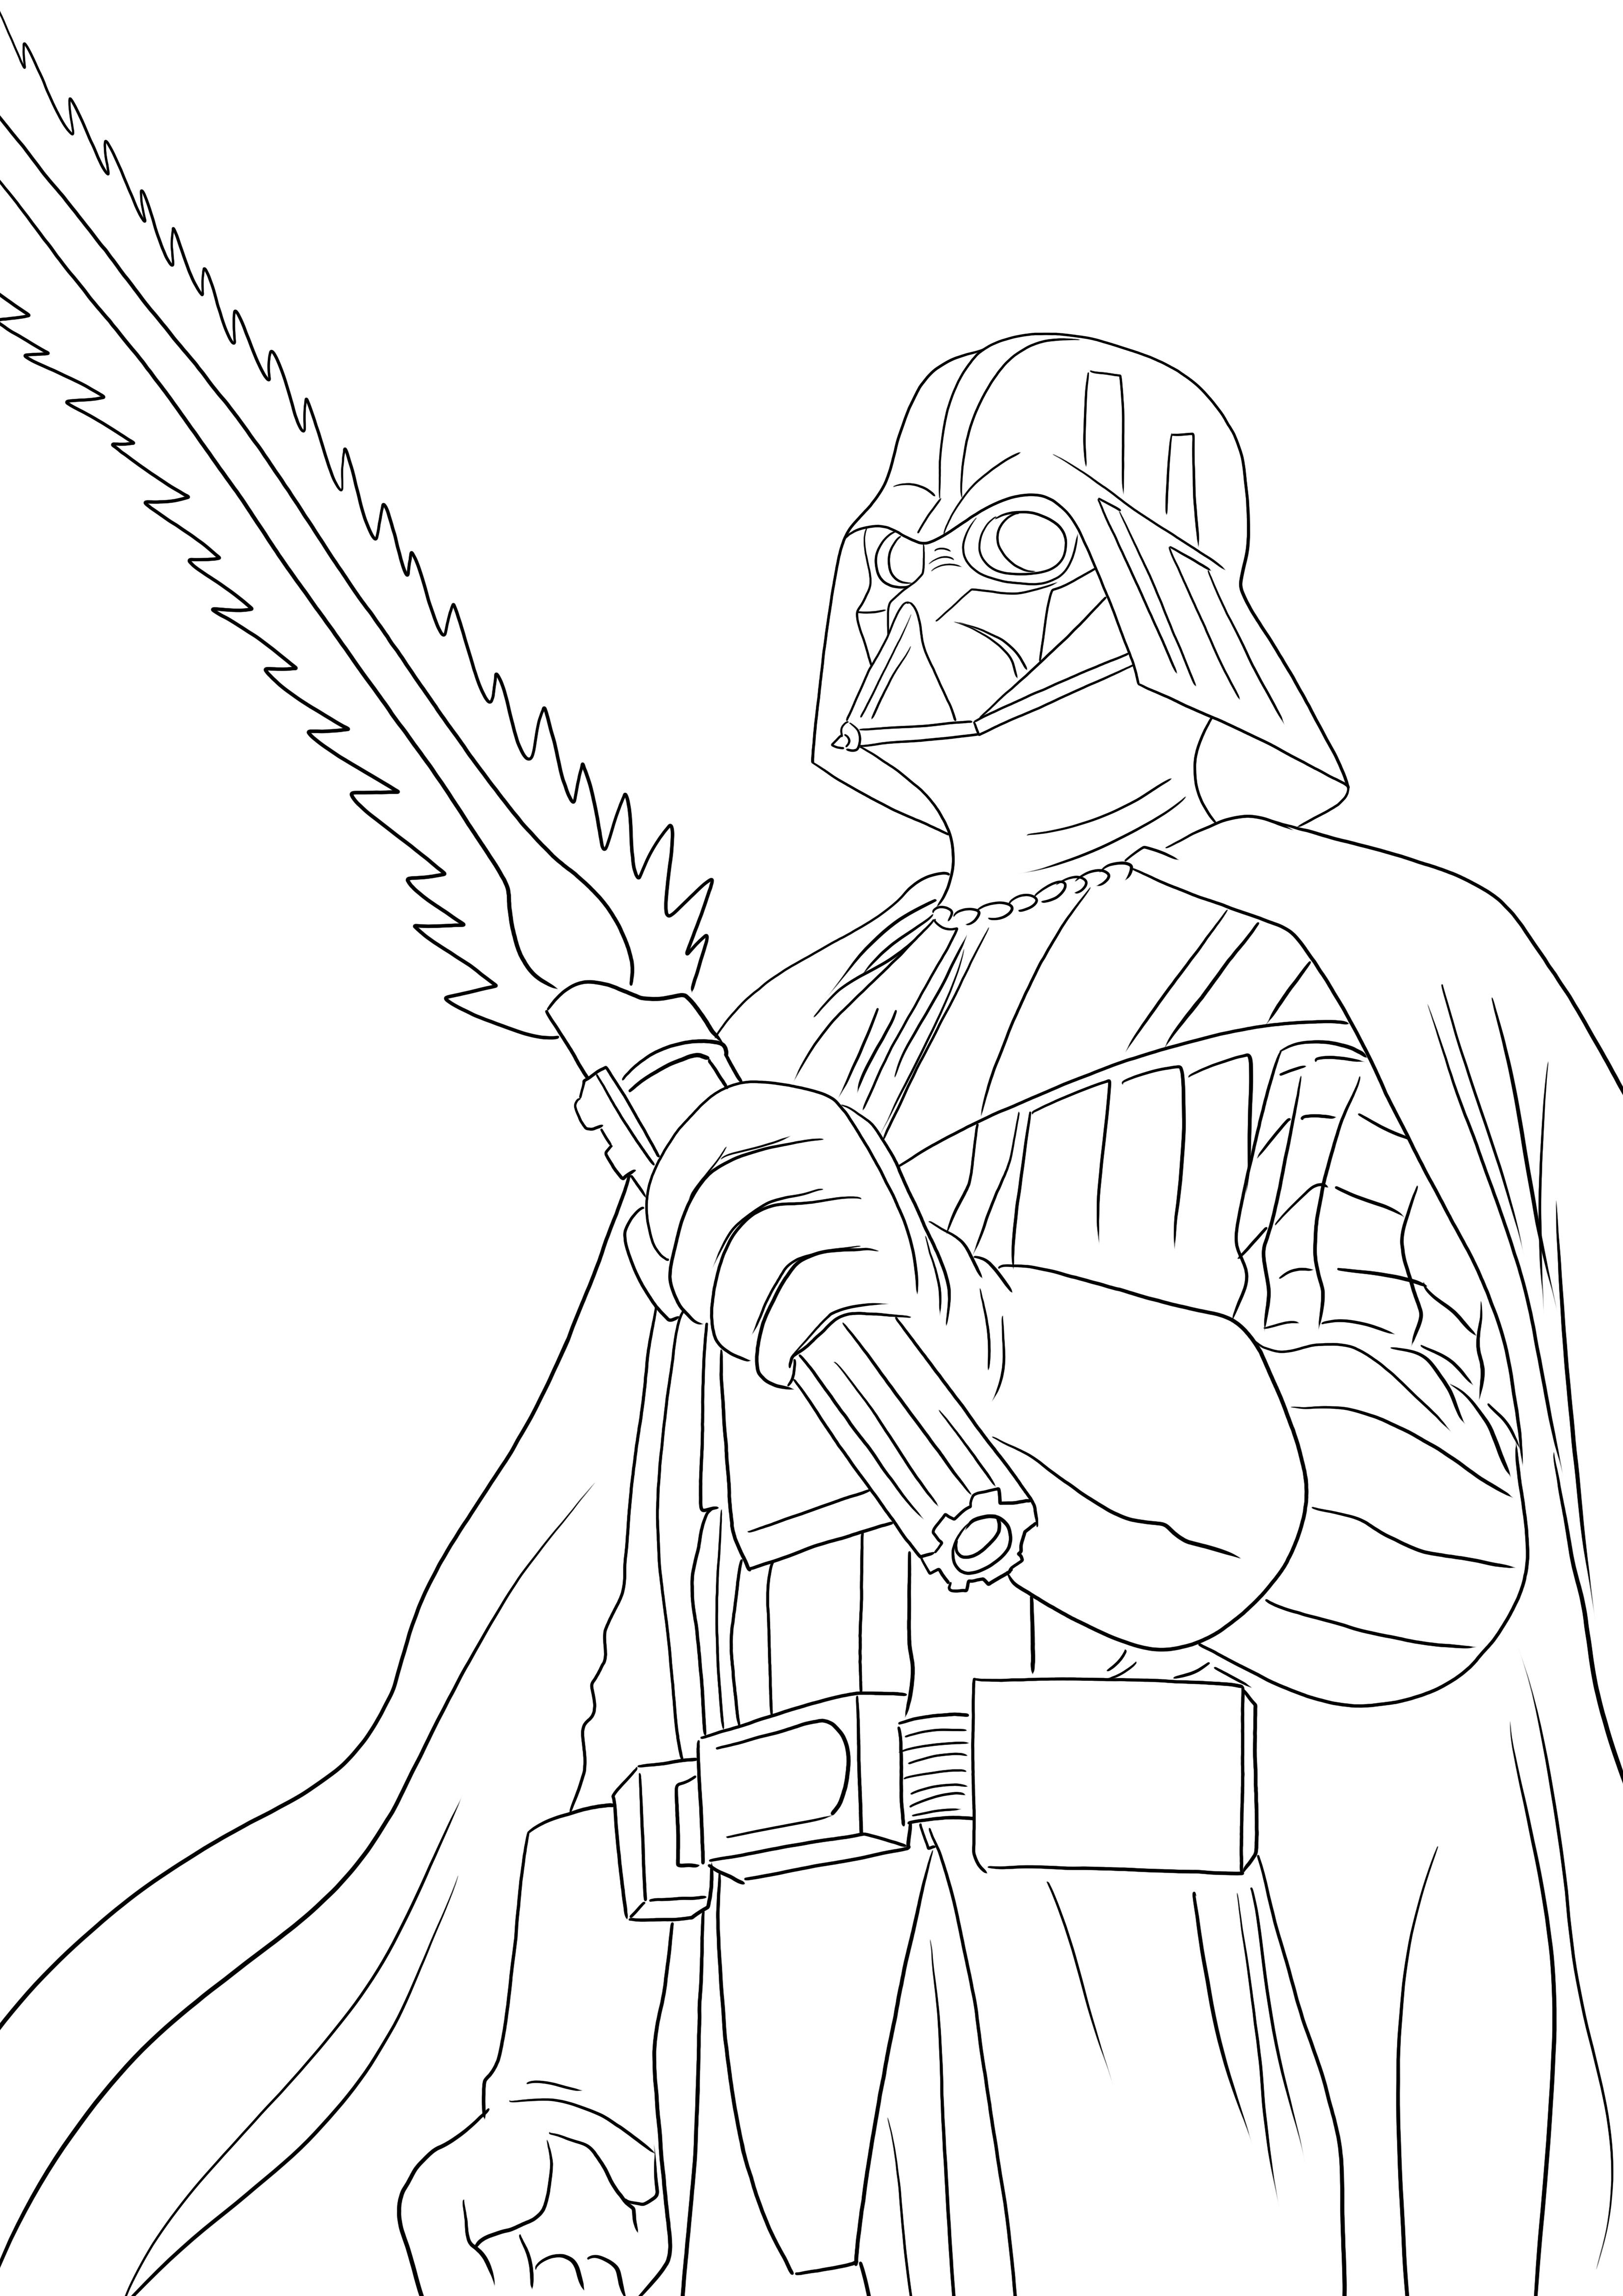 Darth Vader cattivo stampabile gratuitamente da colorare per tutti gli amanti di Star Wars